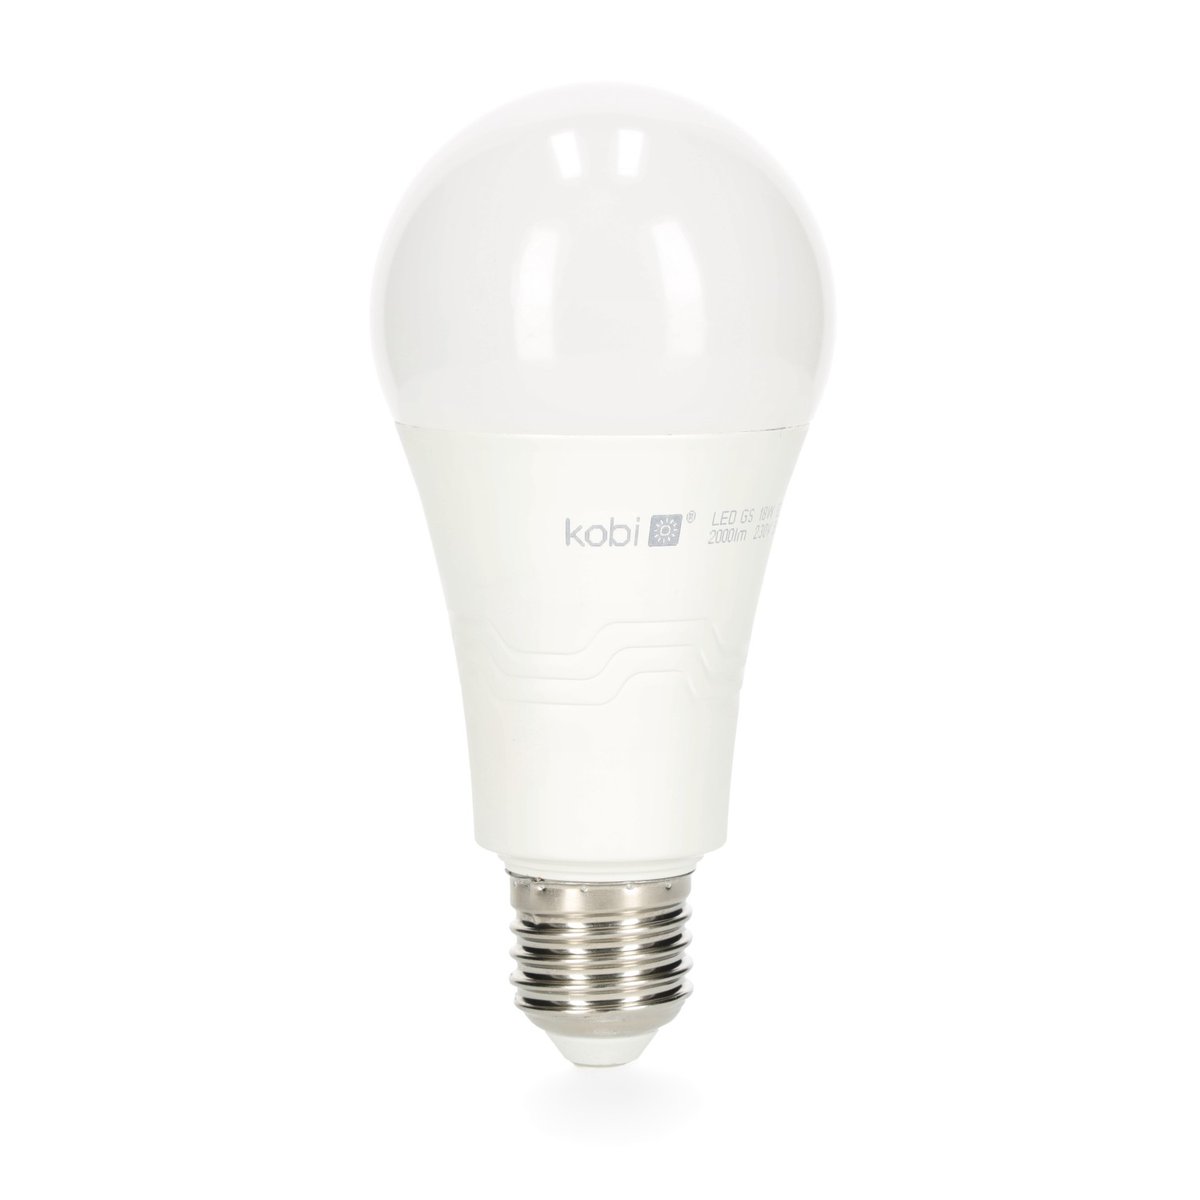 Żarówka LED GS 18W E27 barwa neutralna biała